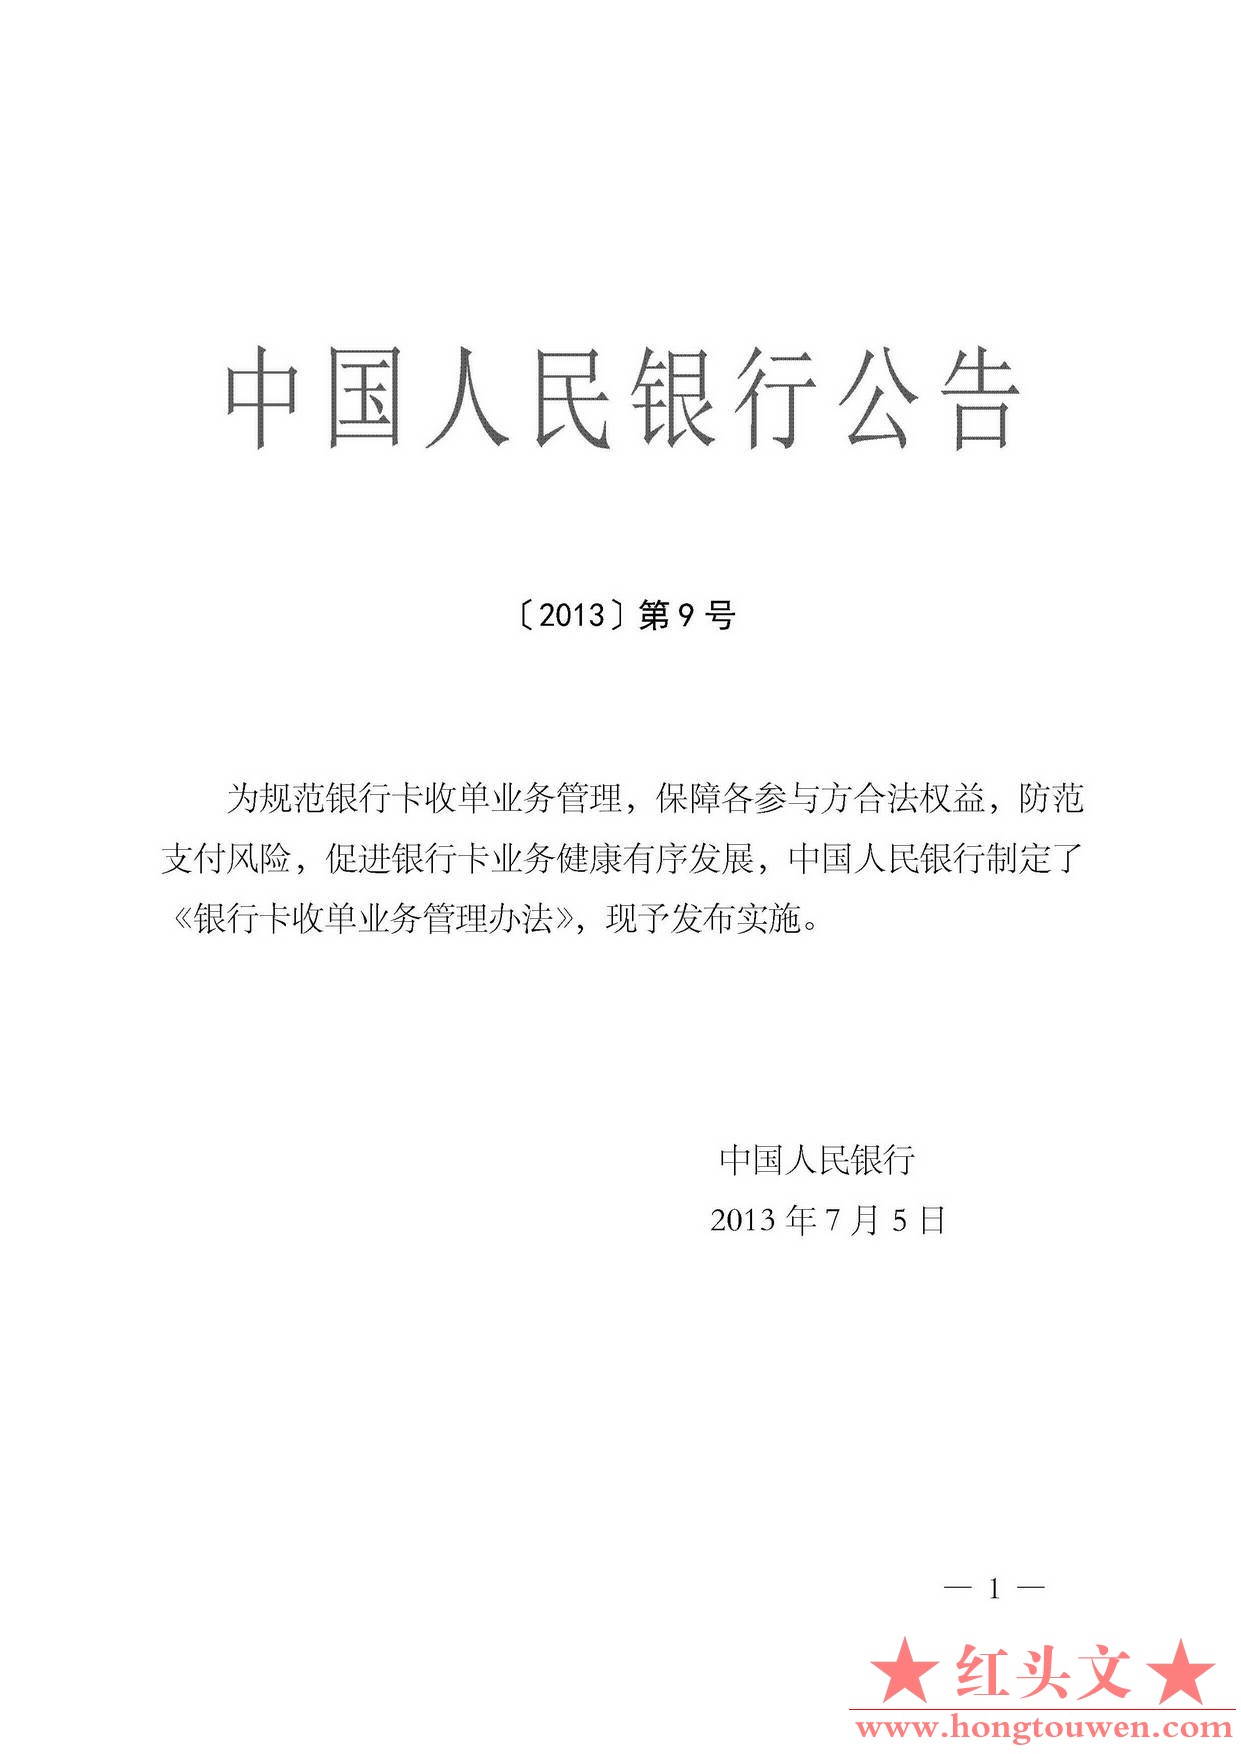 中国人民银行公告[2013]第9号-银行卡收单业务管理办法_页面_01.jpg